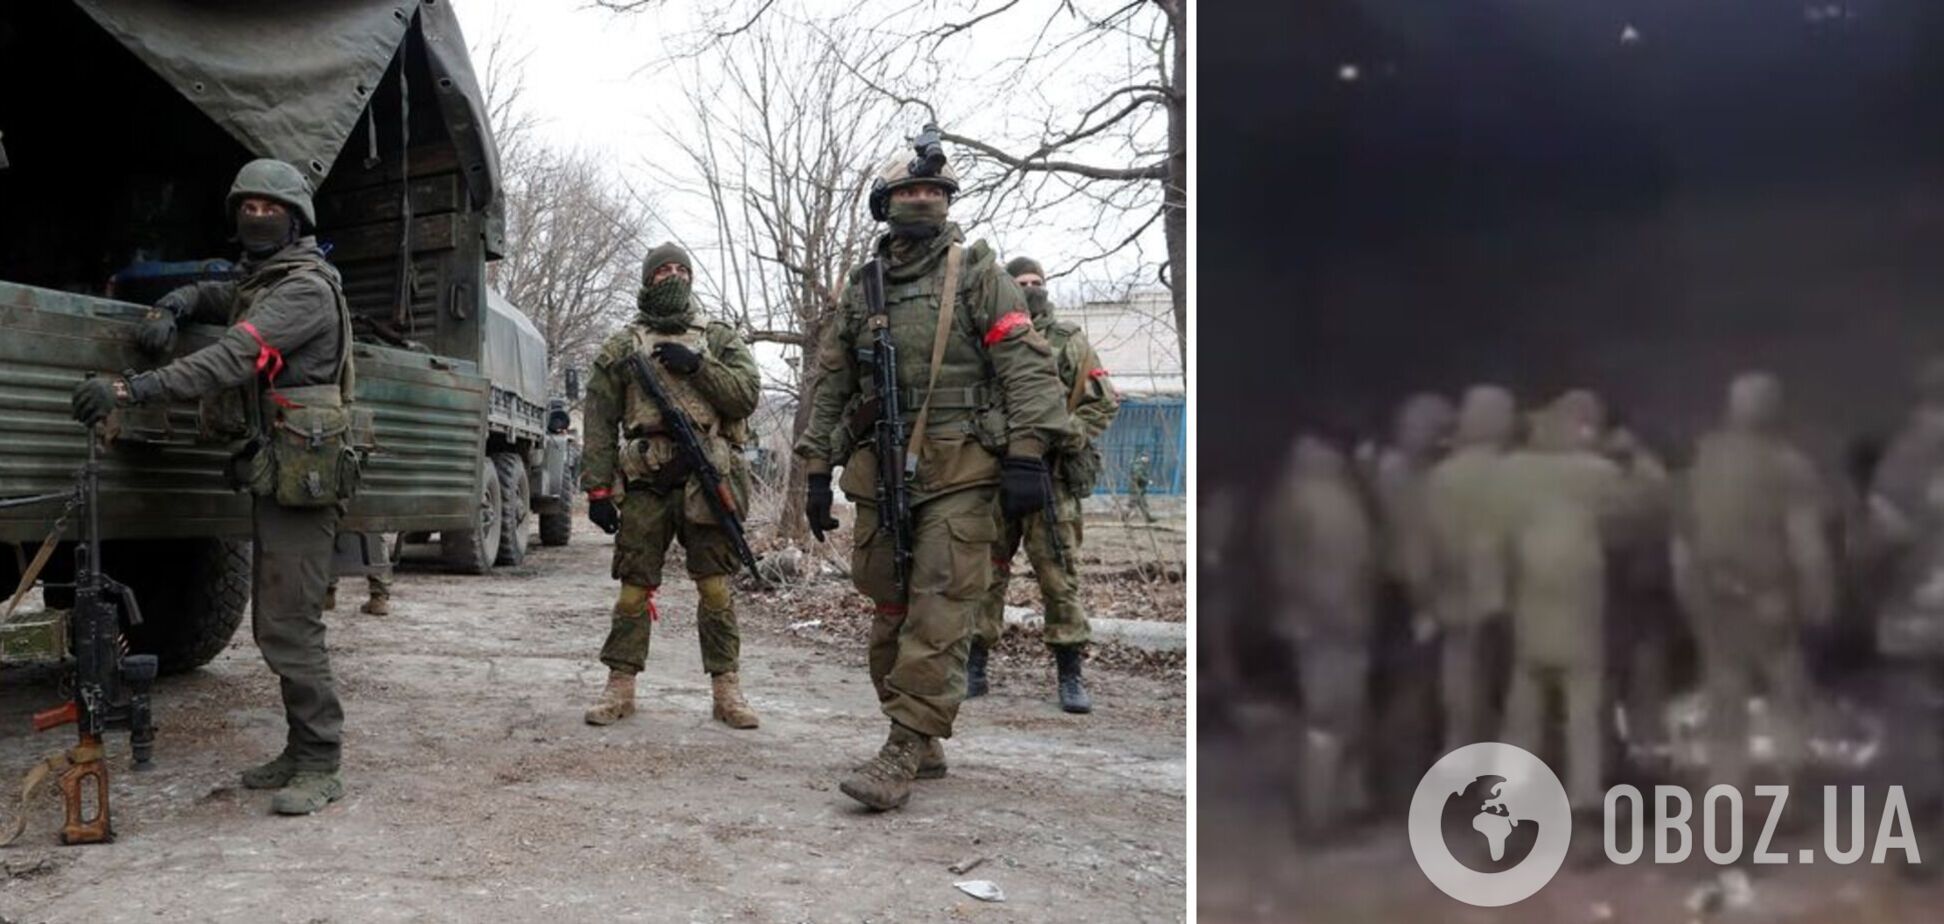 'Не ели нормально 4 дня, нас кинули, как скот': российские военные признались, что их увольняют задним числом. Видео